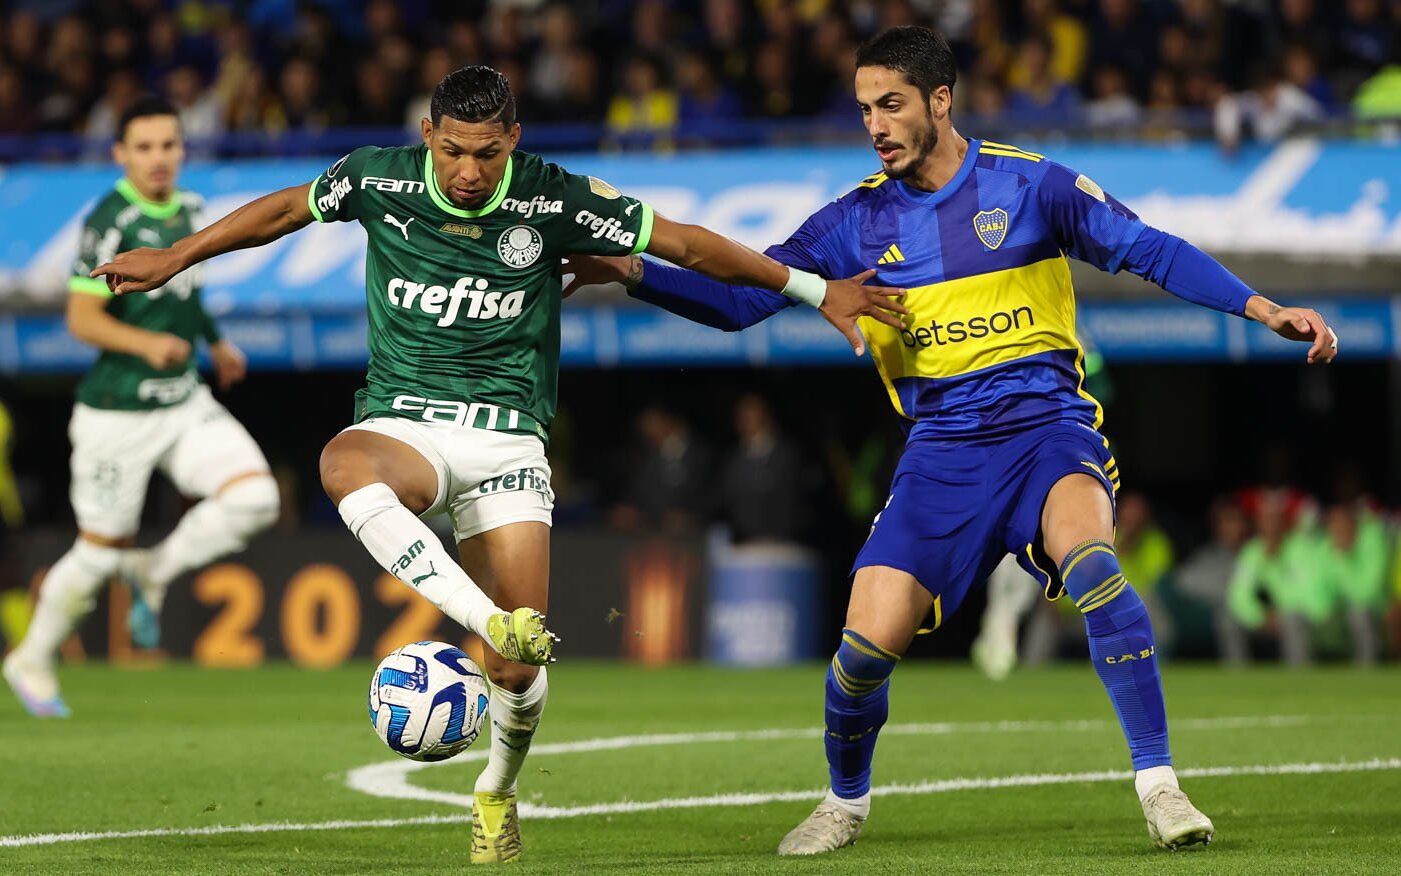 Rival do Palmeiras, herói do Boca Juniors foi algoz de time do coração